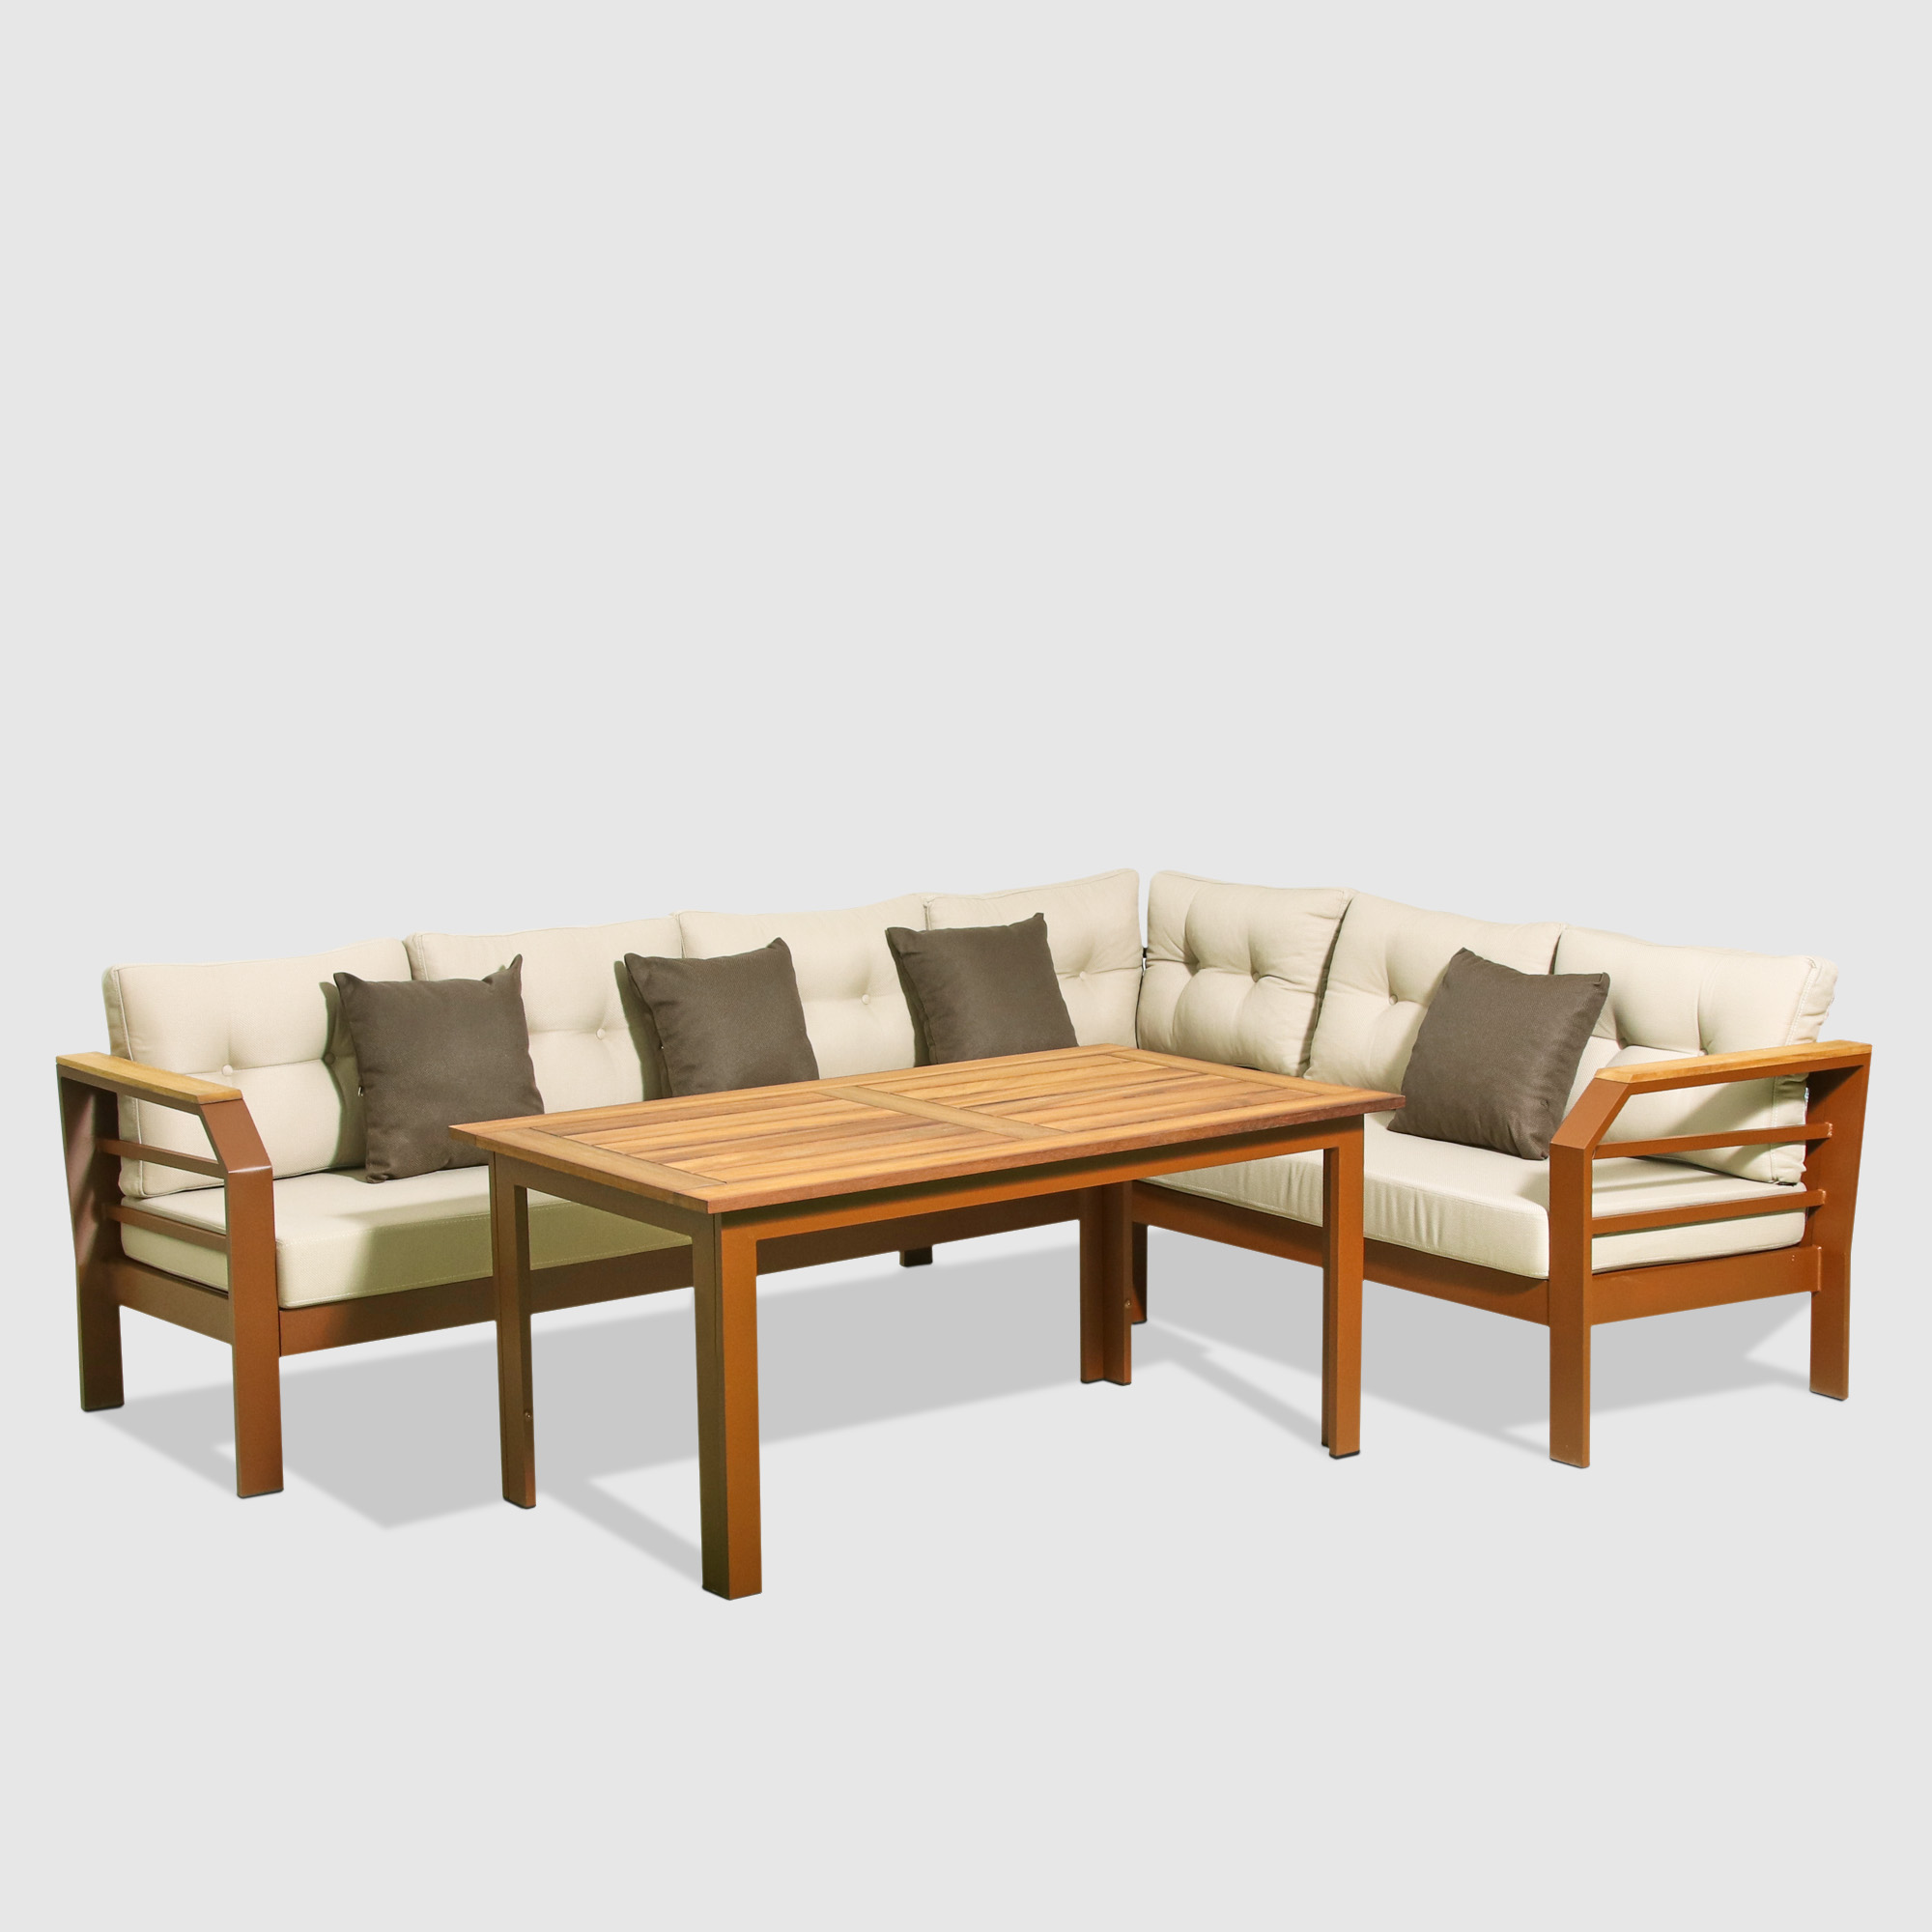 Комплект мебели Alora Garden диван угловой + столик, цвет коричневый, размер 262х203х65